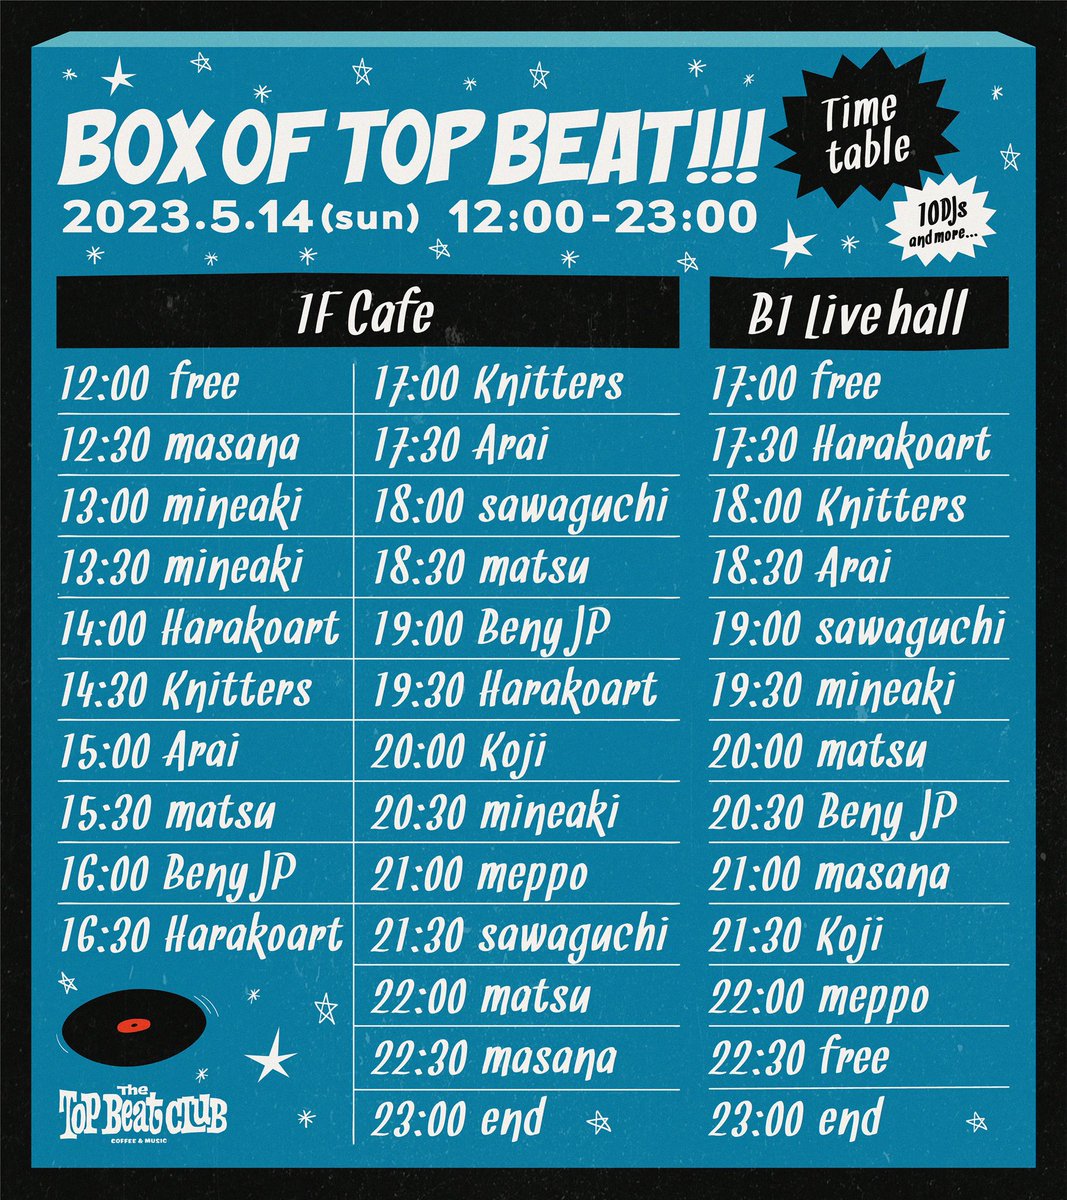 本日のトップビートクラブはDJ祭り！！
1フード1ドリンクでお楽しみいただけます！

Box of Top Beat!!! DJ party
Top Beat Club & Cafe
Cafe 12:00-23:00
Live Hall 17:00-23:00

Merseybeat Freakbeat Britishbeat 
50s 60s Rhythm&Blues Soul Garage 
Mods Northen Soul ...